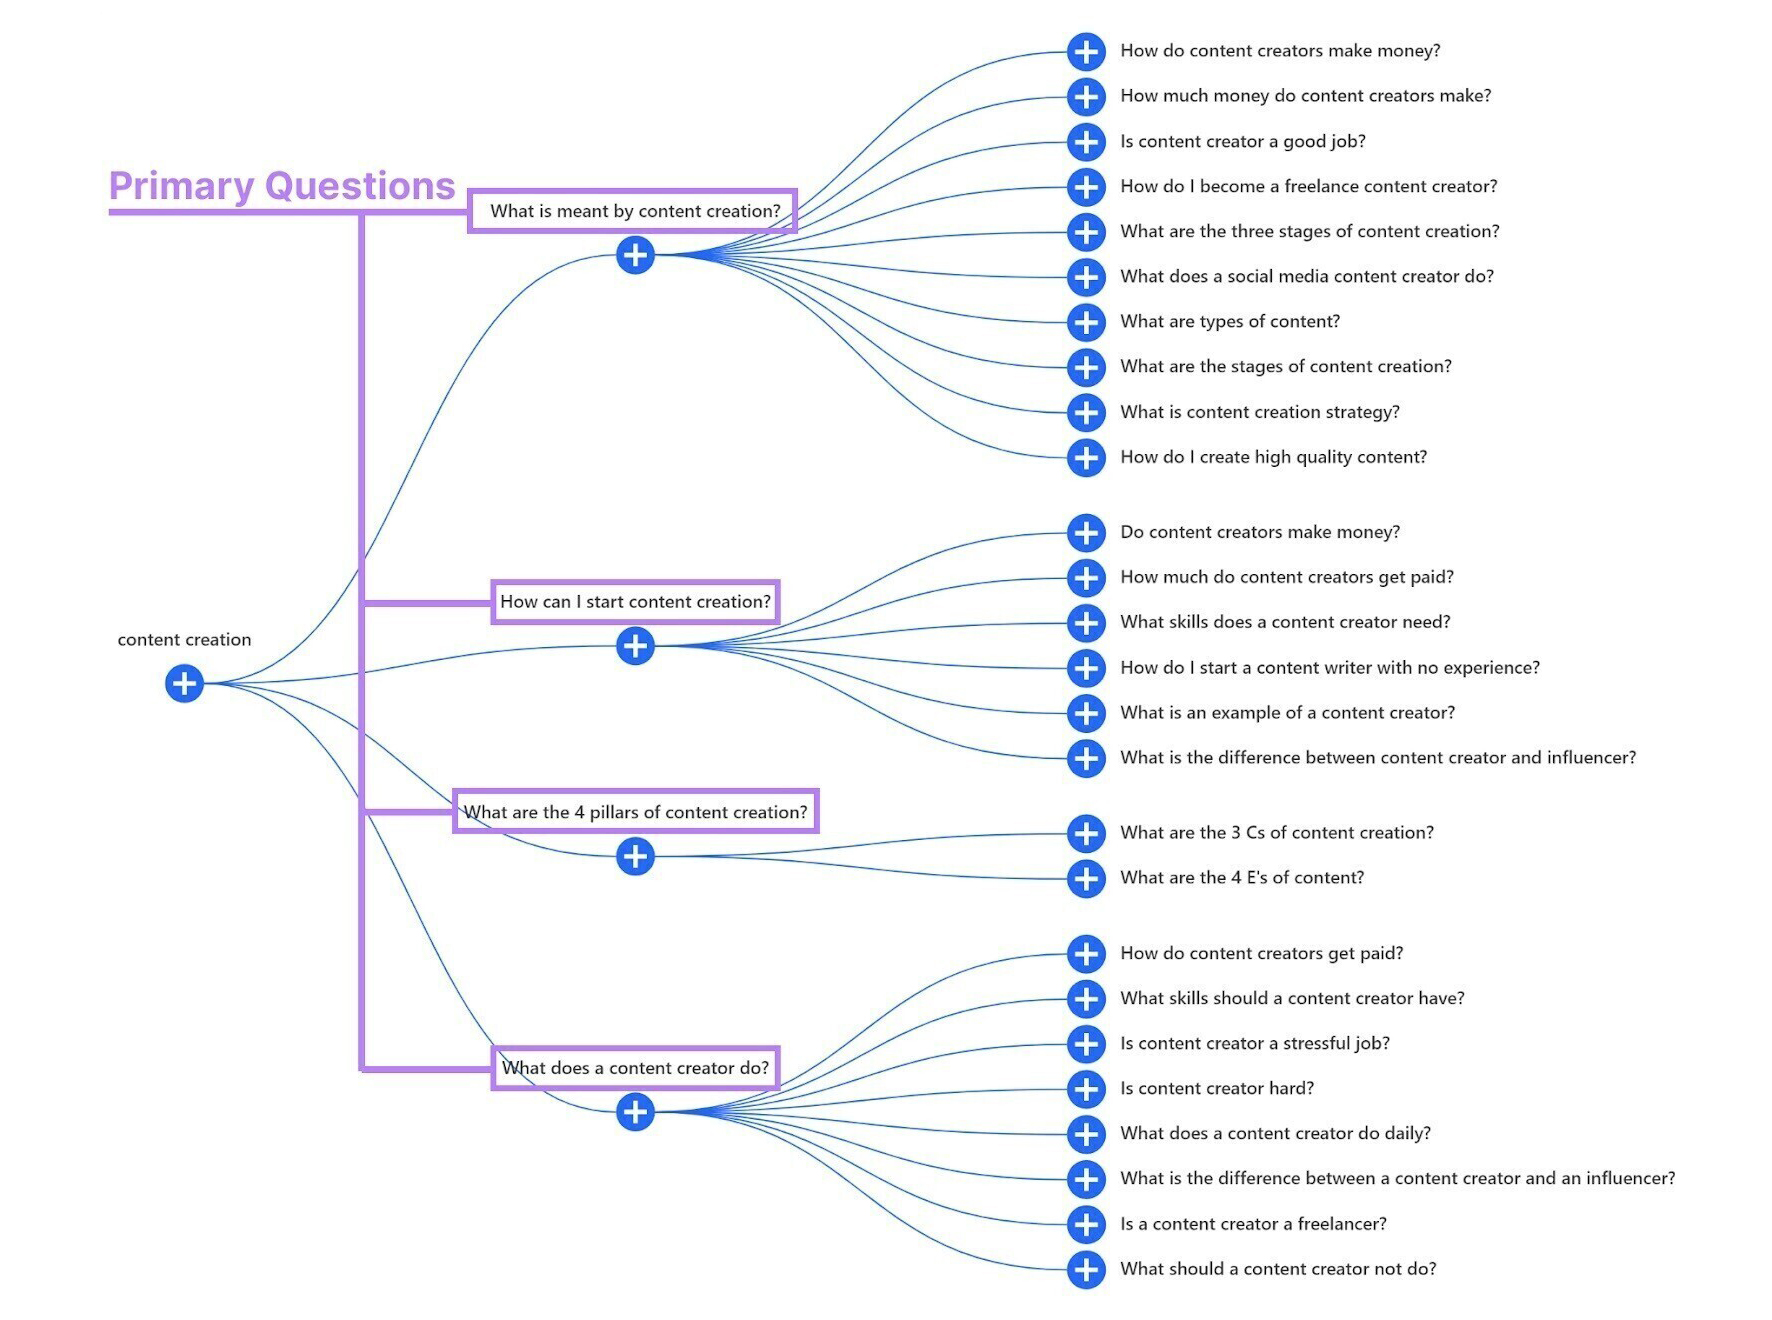 пример диаграммы разветвления для поиска «content creation» в США